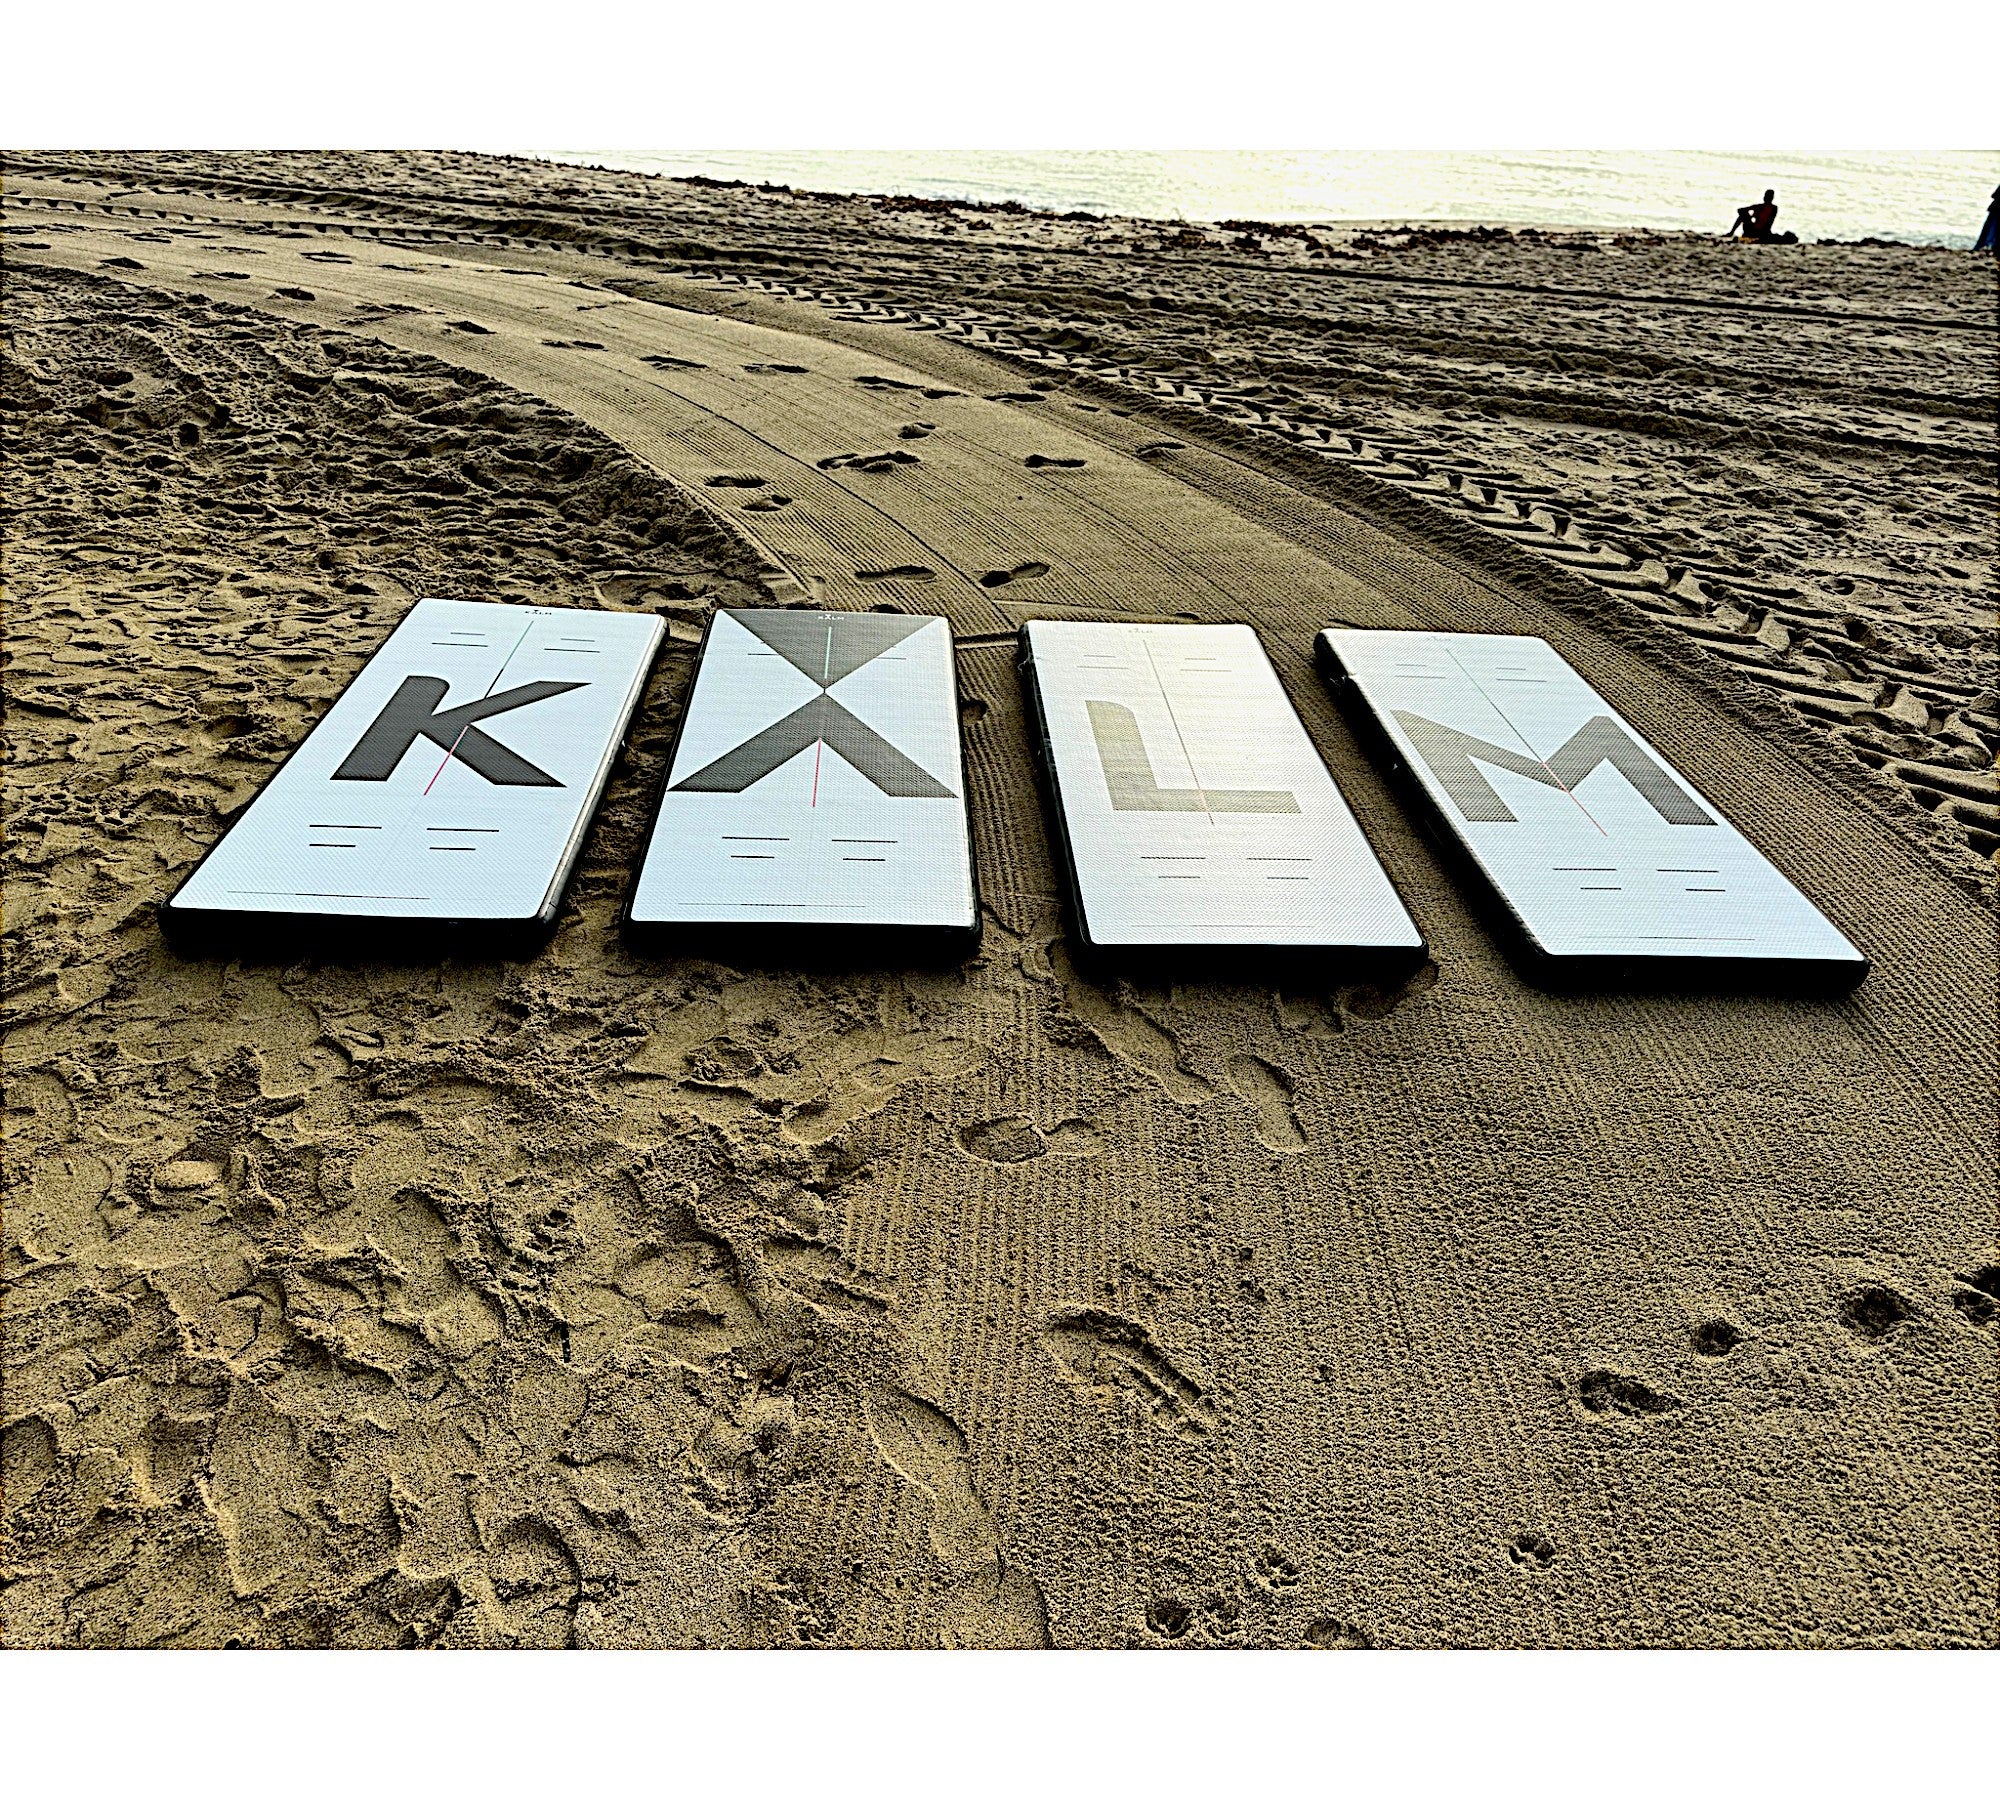 Kalm KORE Beach Yoga Boards for Yoga on the Beach